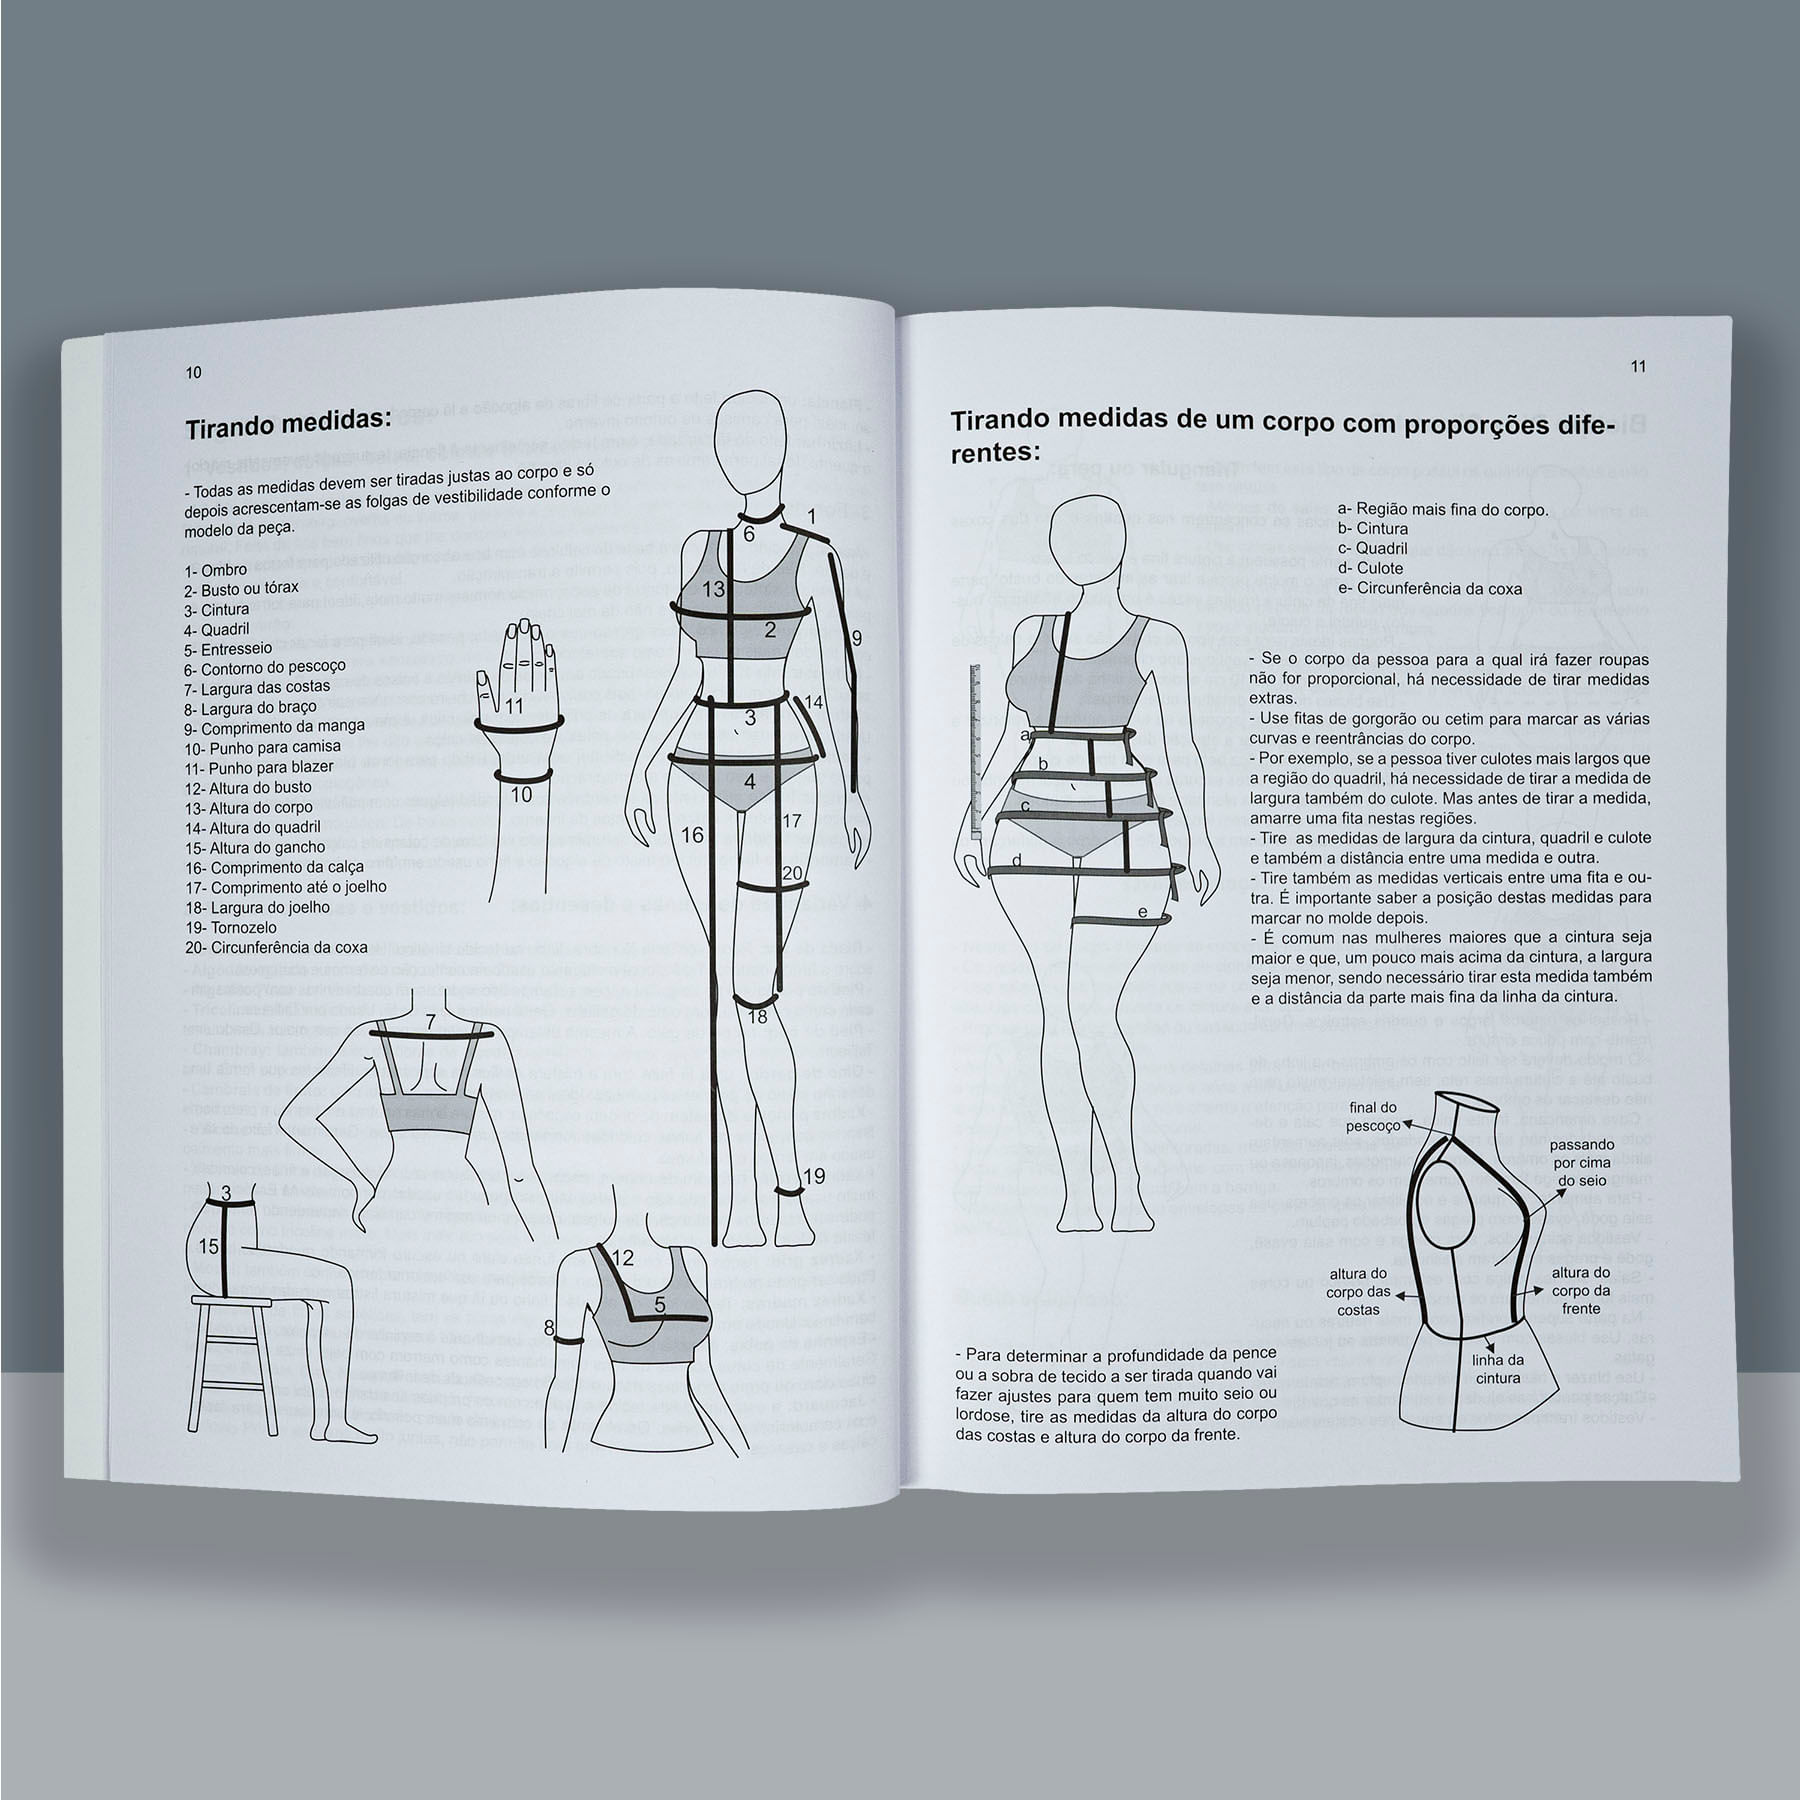 Livro modelagem prática especial plus size 2ª edição by Marlene Mukai